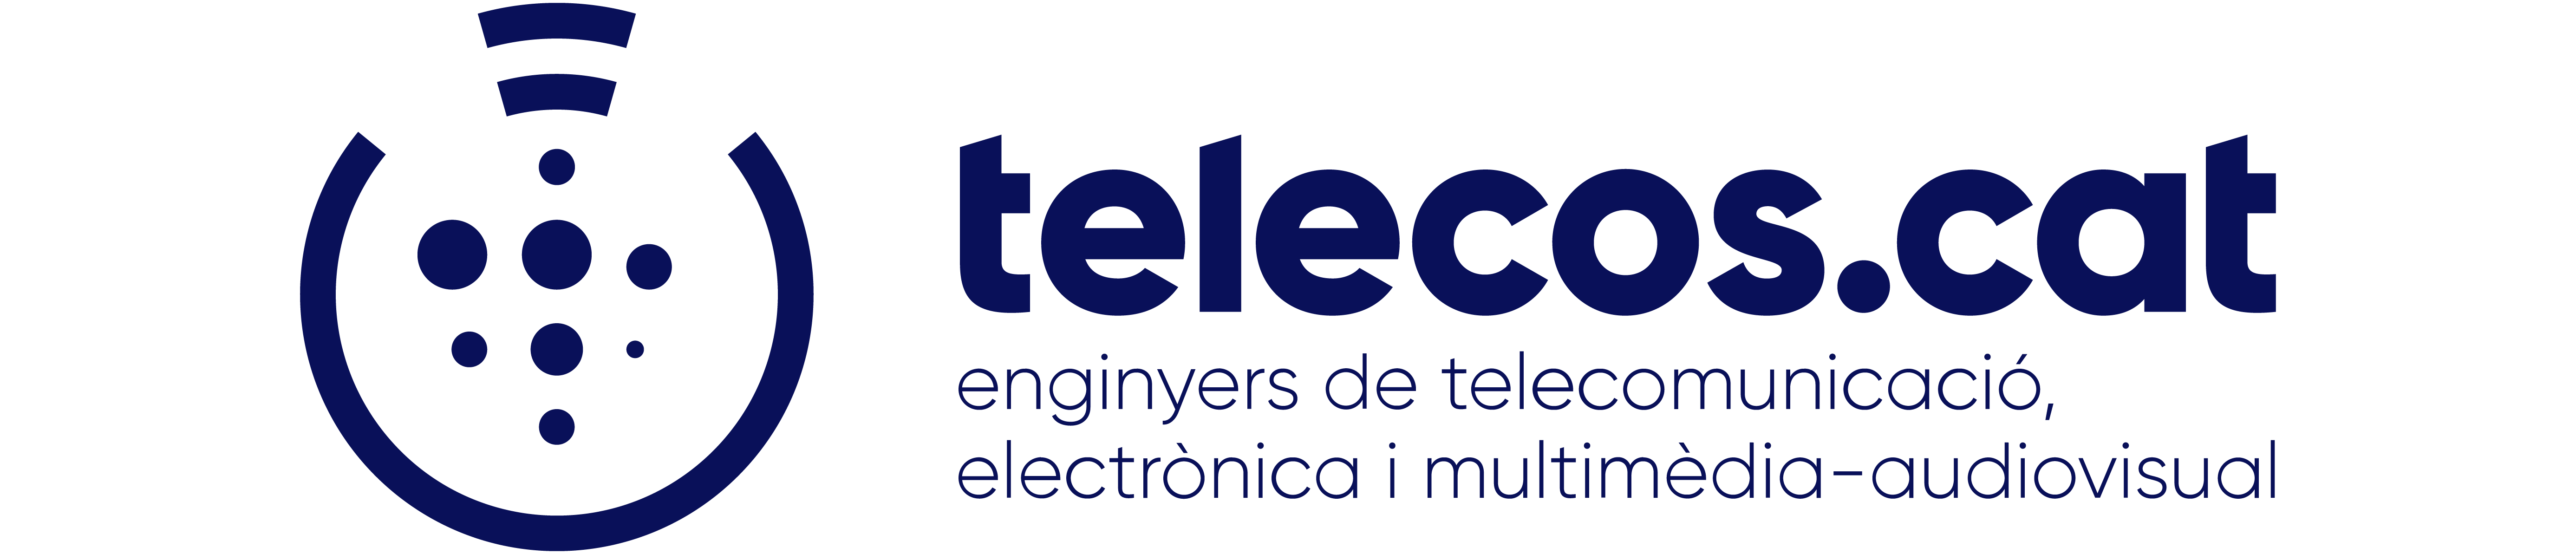 Associació Catalana d’Enginyeria de Telecomunicació i Tecnologies Digitals – TELECOS.CAT